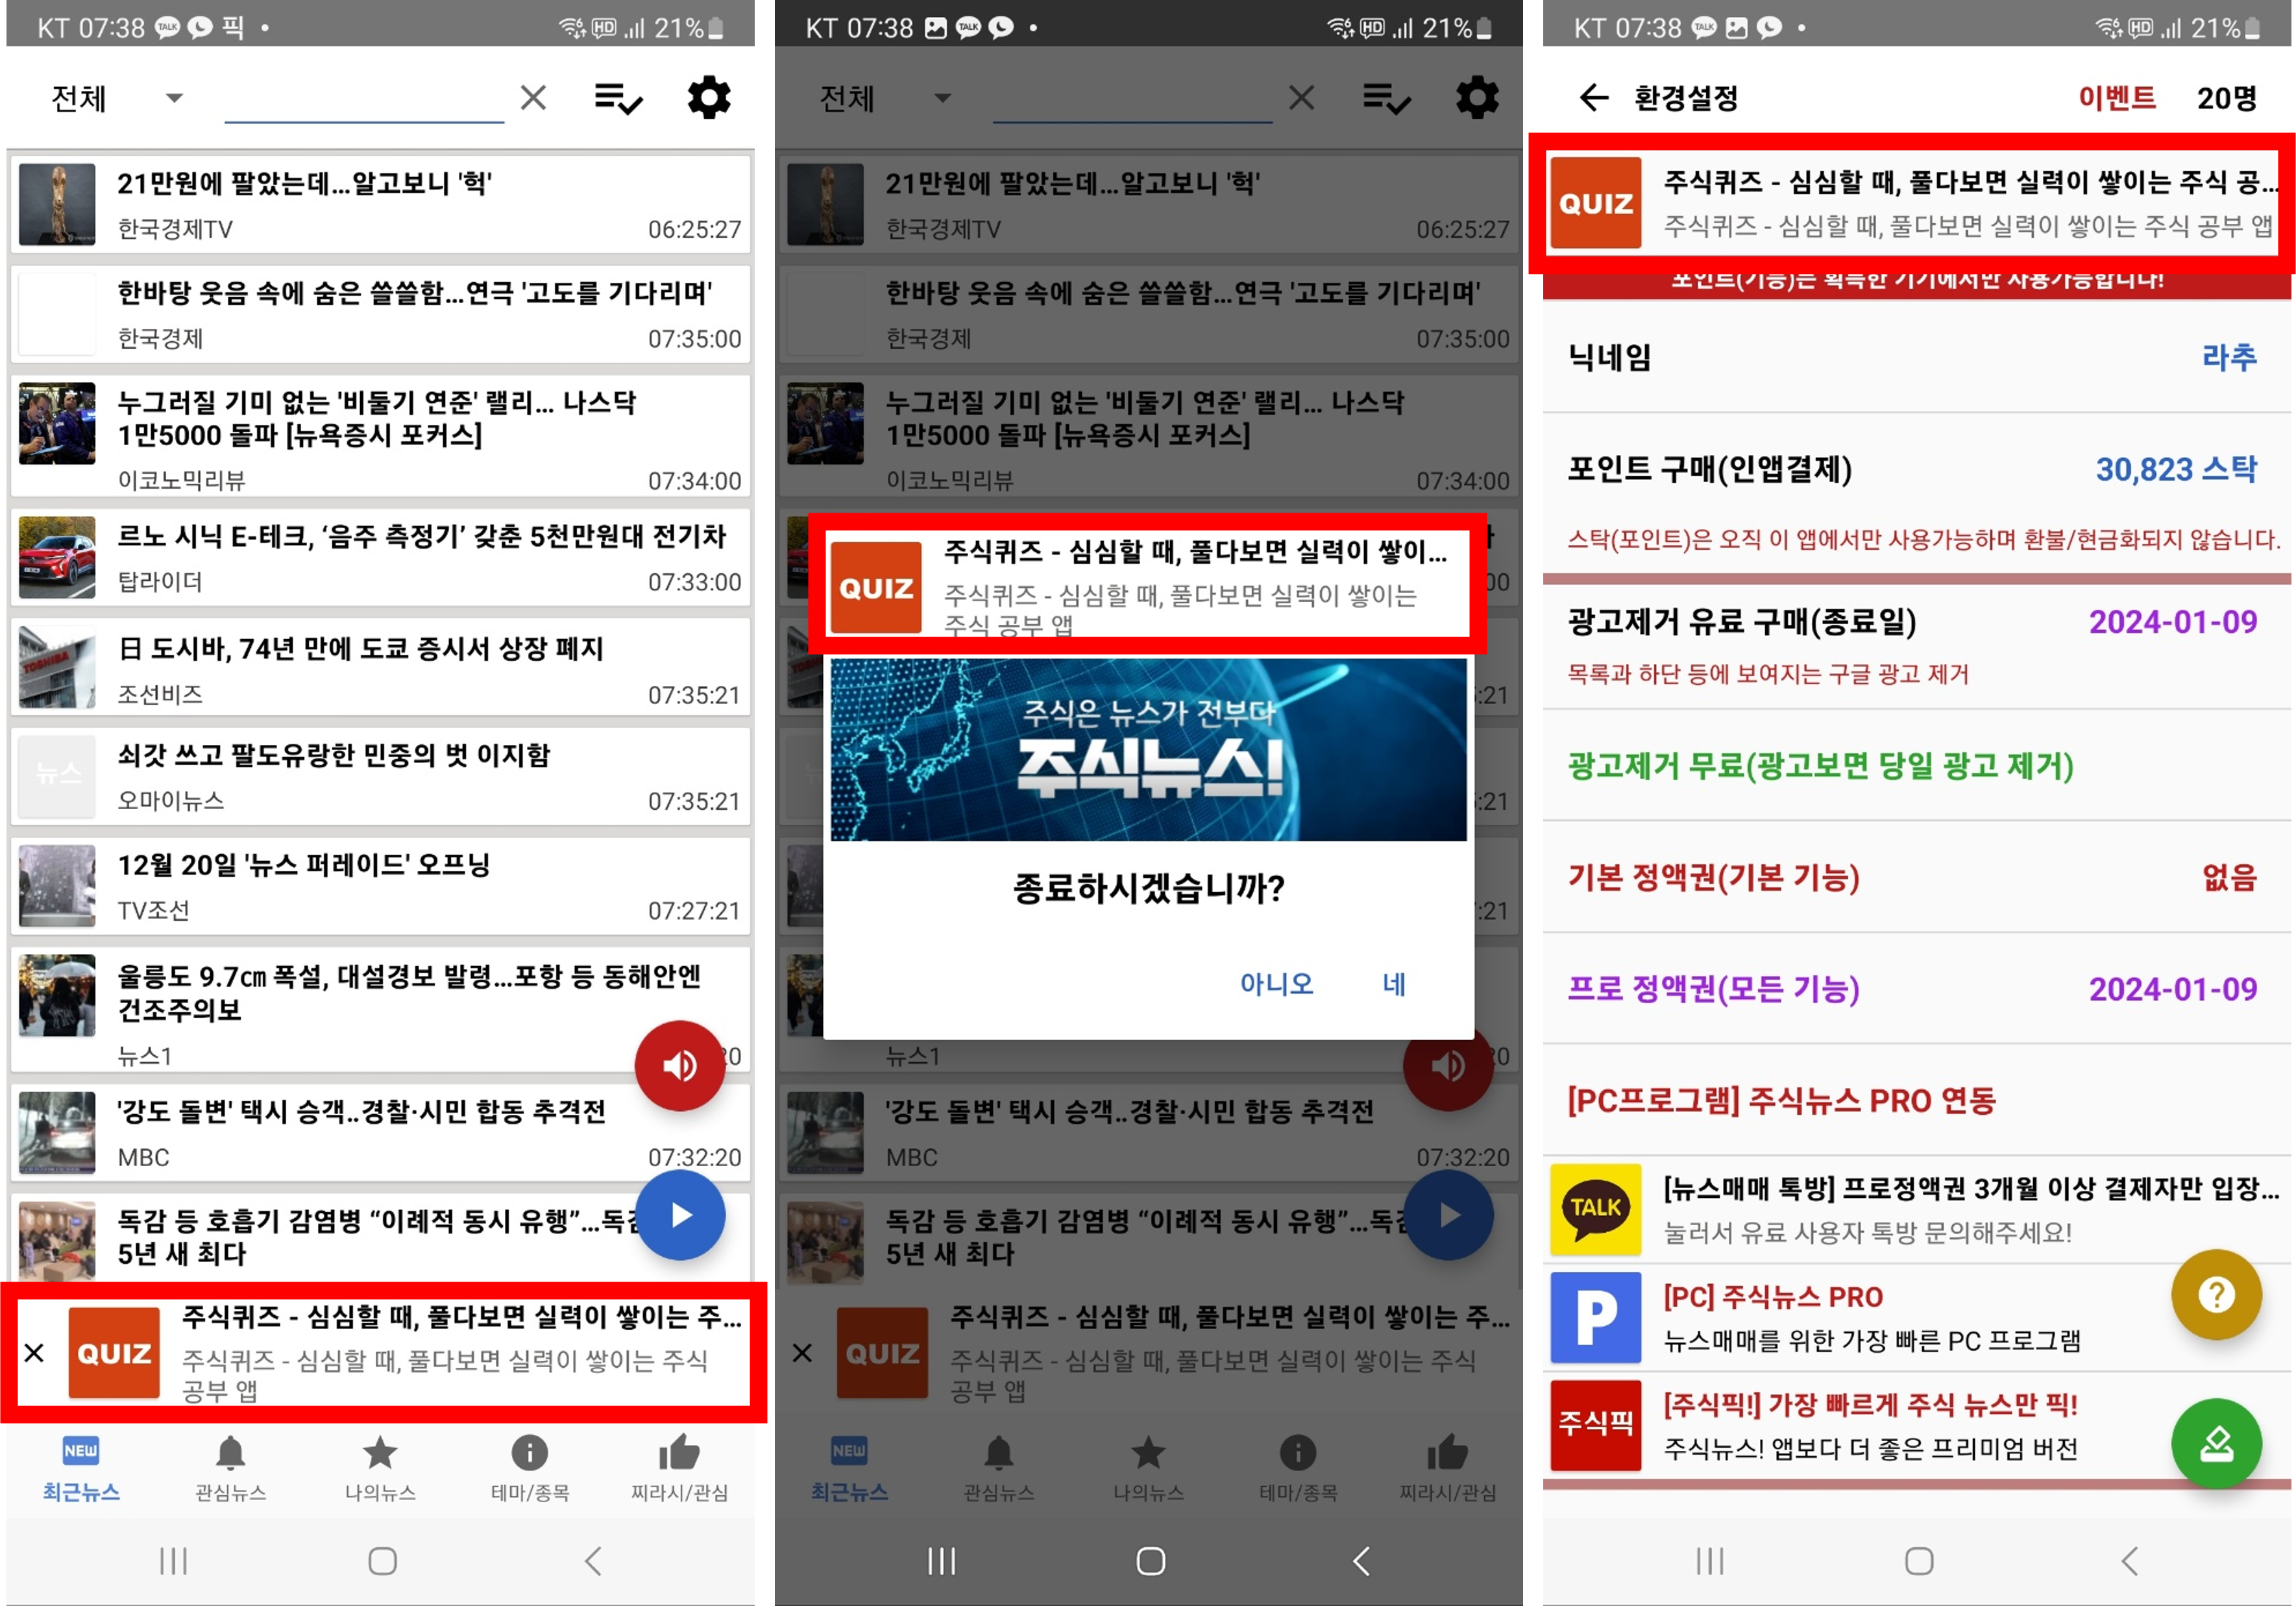 주식뉴스 앱 고정 배너광고